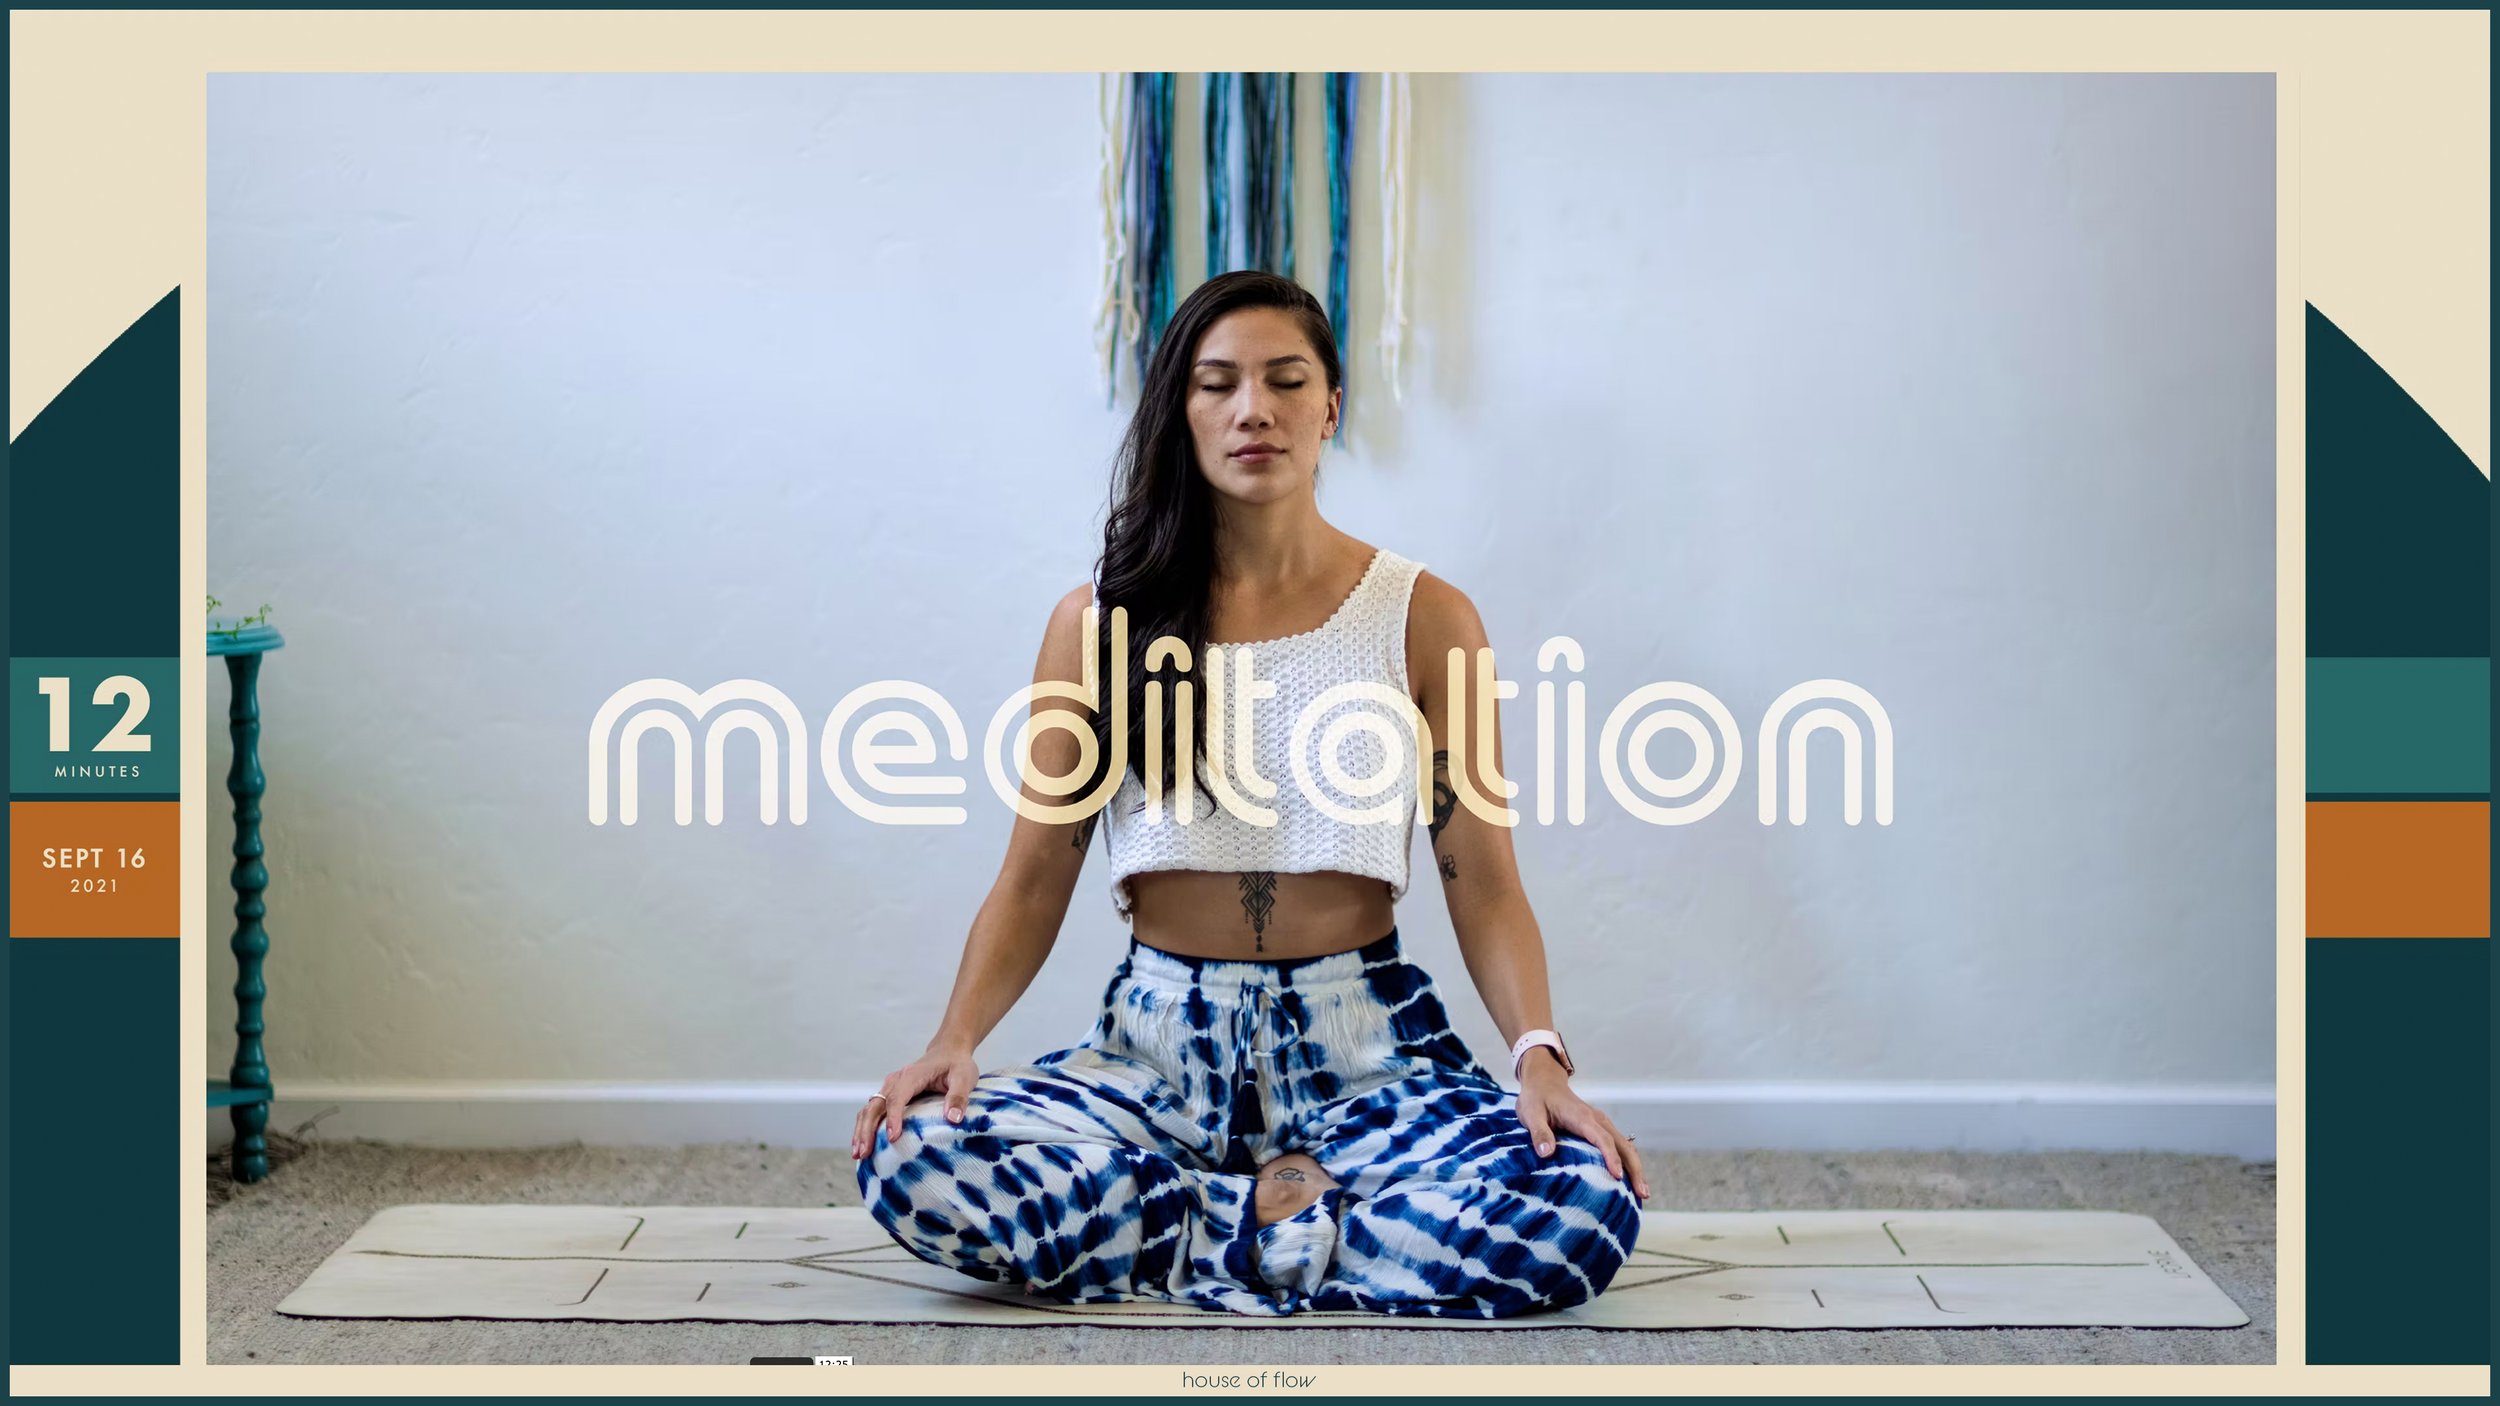 Meditation | Calm | 12 minutes